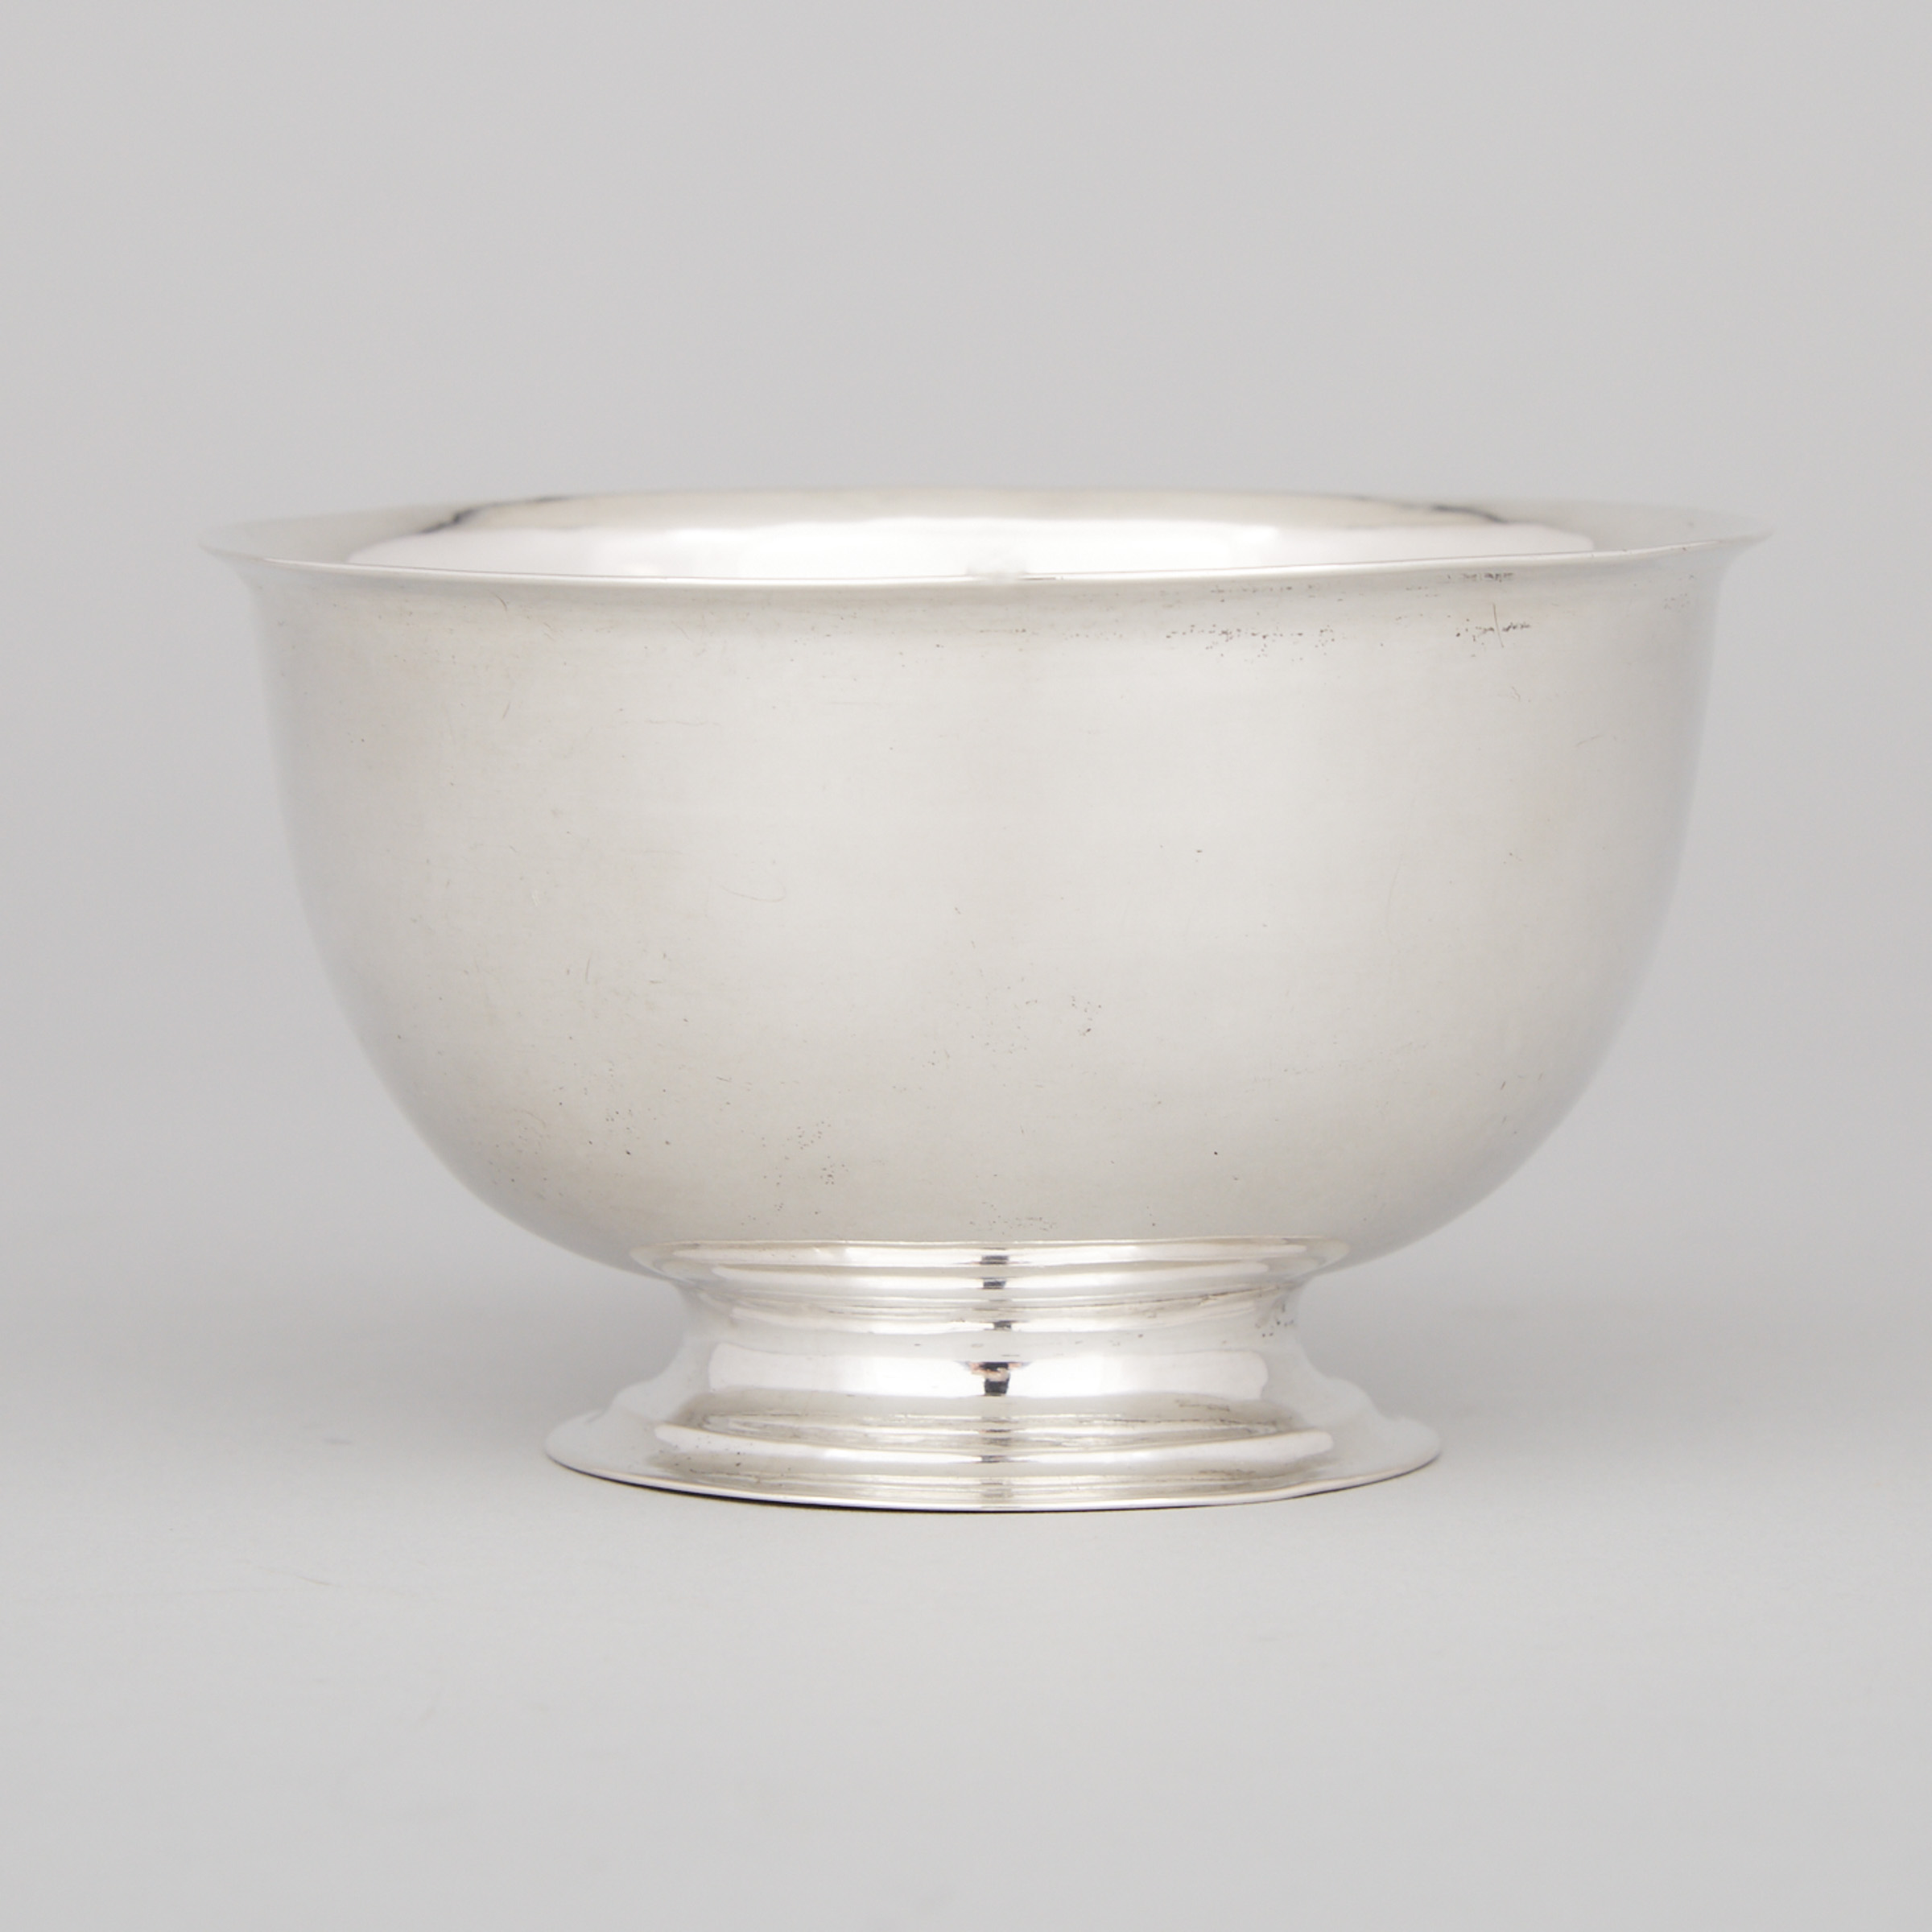 German Silver Sugar Bowl, Hans Jürgen Berg, Lübeck, c.1760-70